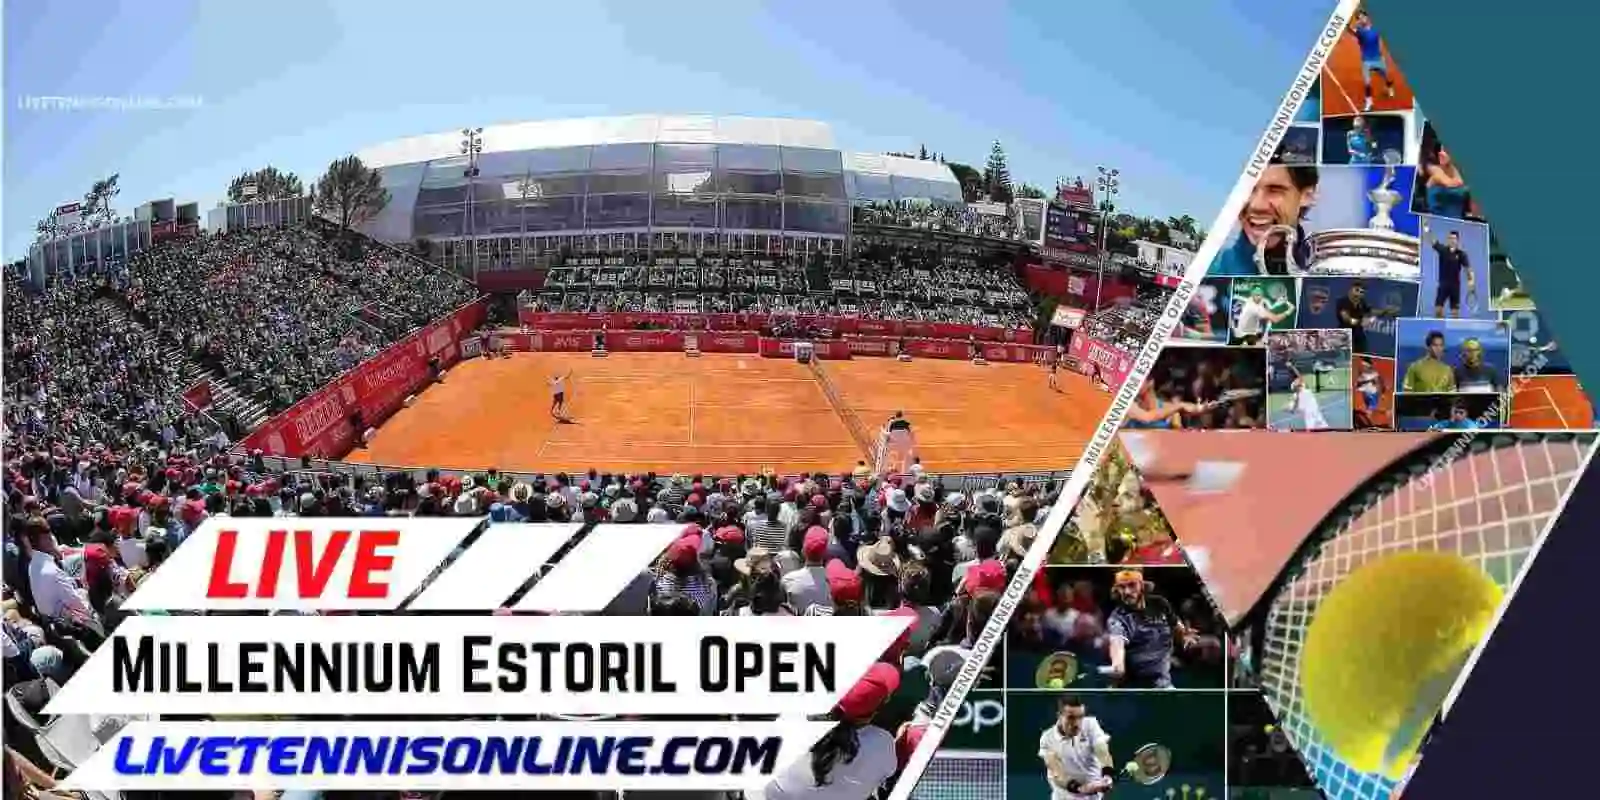 Millennium Estoril Open Tennis Live